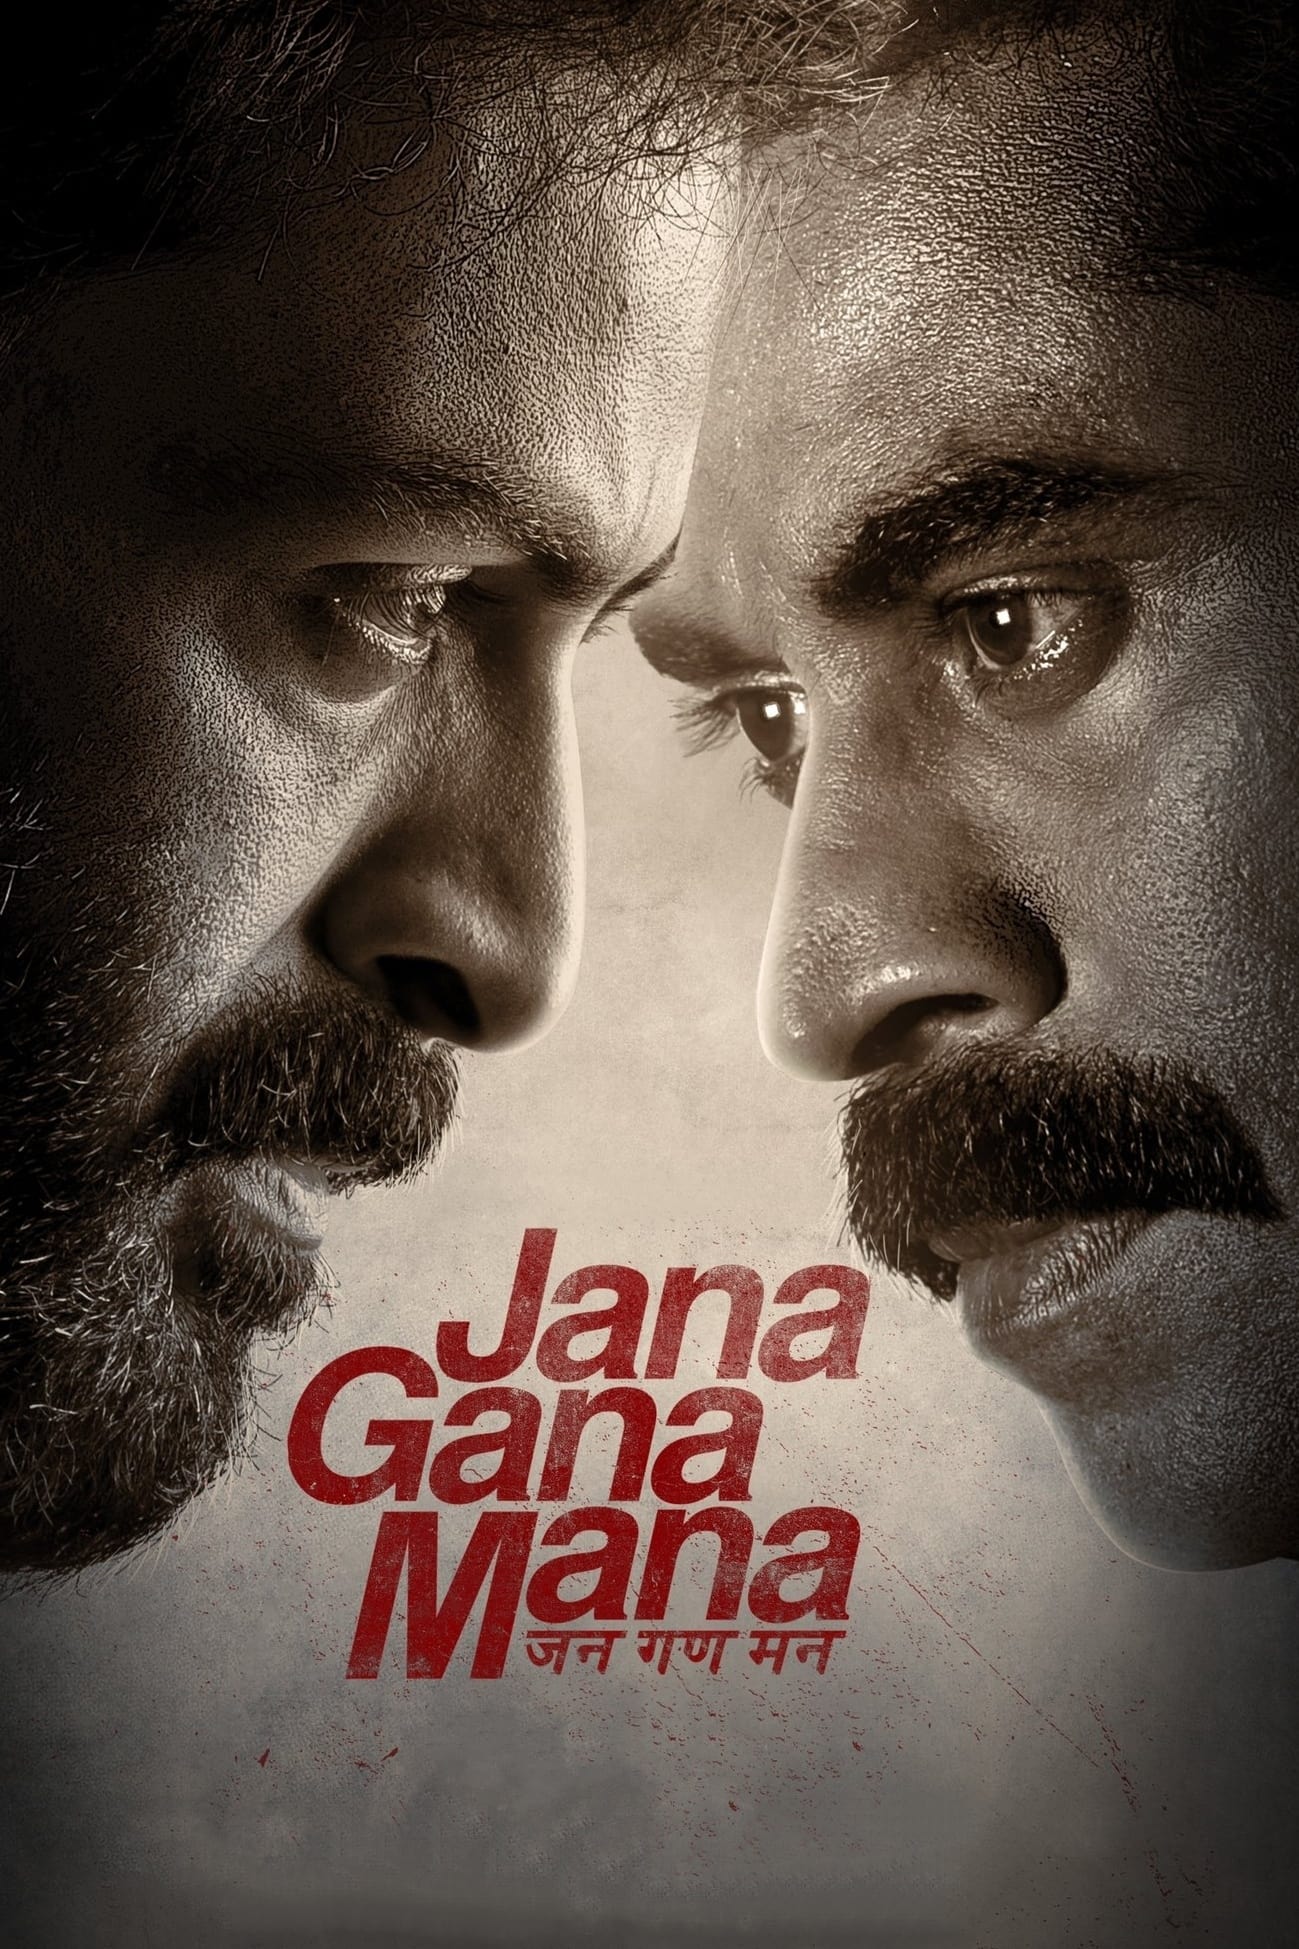 Poster for the movie "Jana Gana Mana"